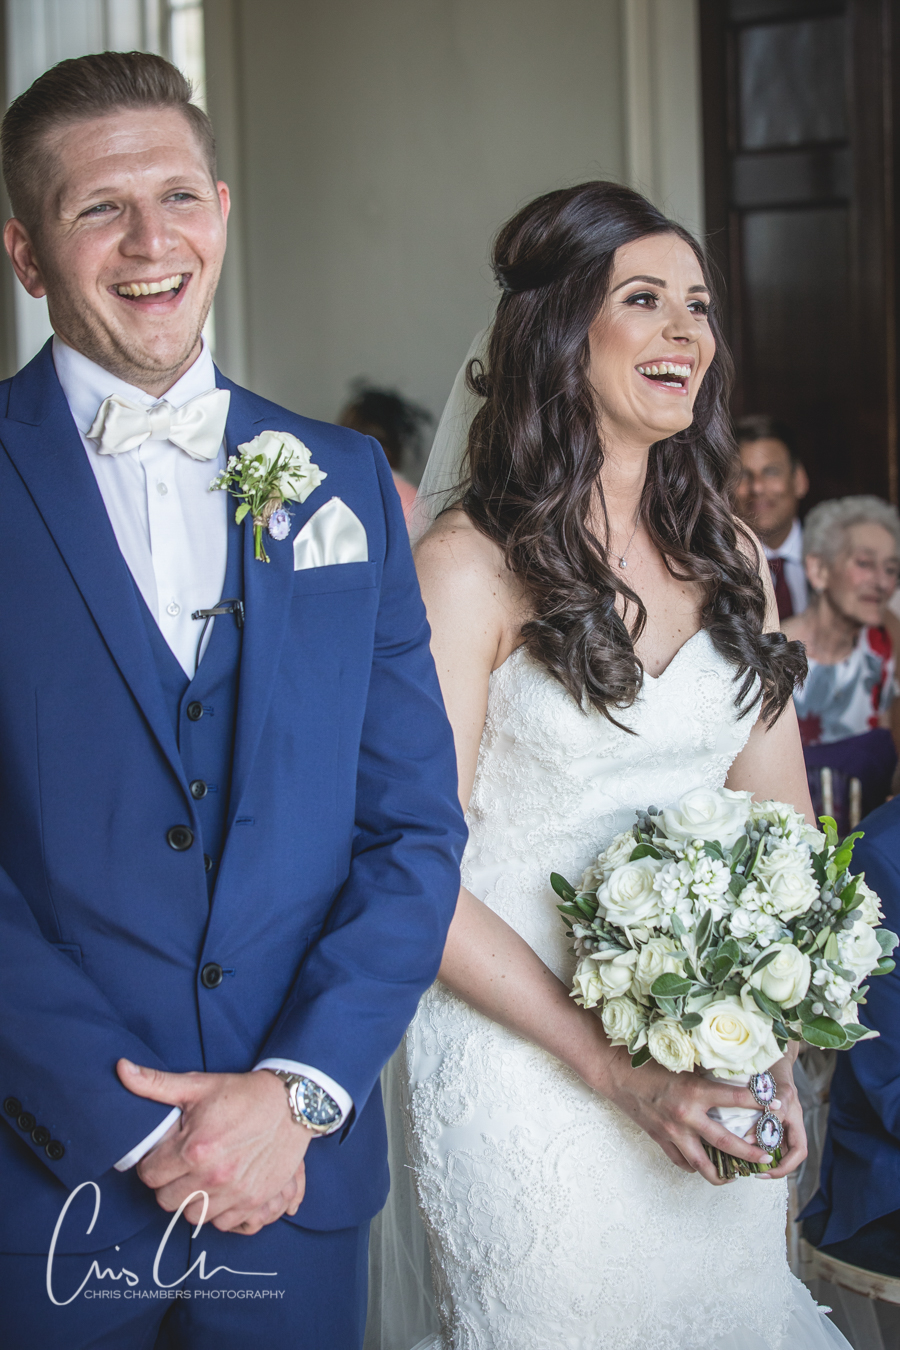 Stubton Hall weddings, wedding photographer Chris Chambers. Wedding photographs at Stubton Hall. 